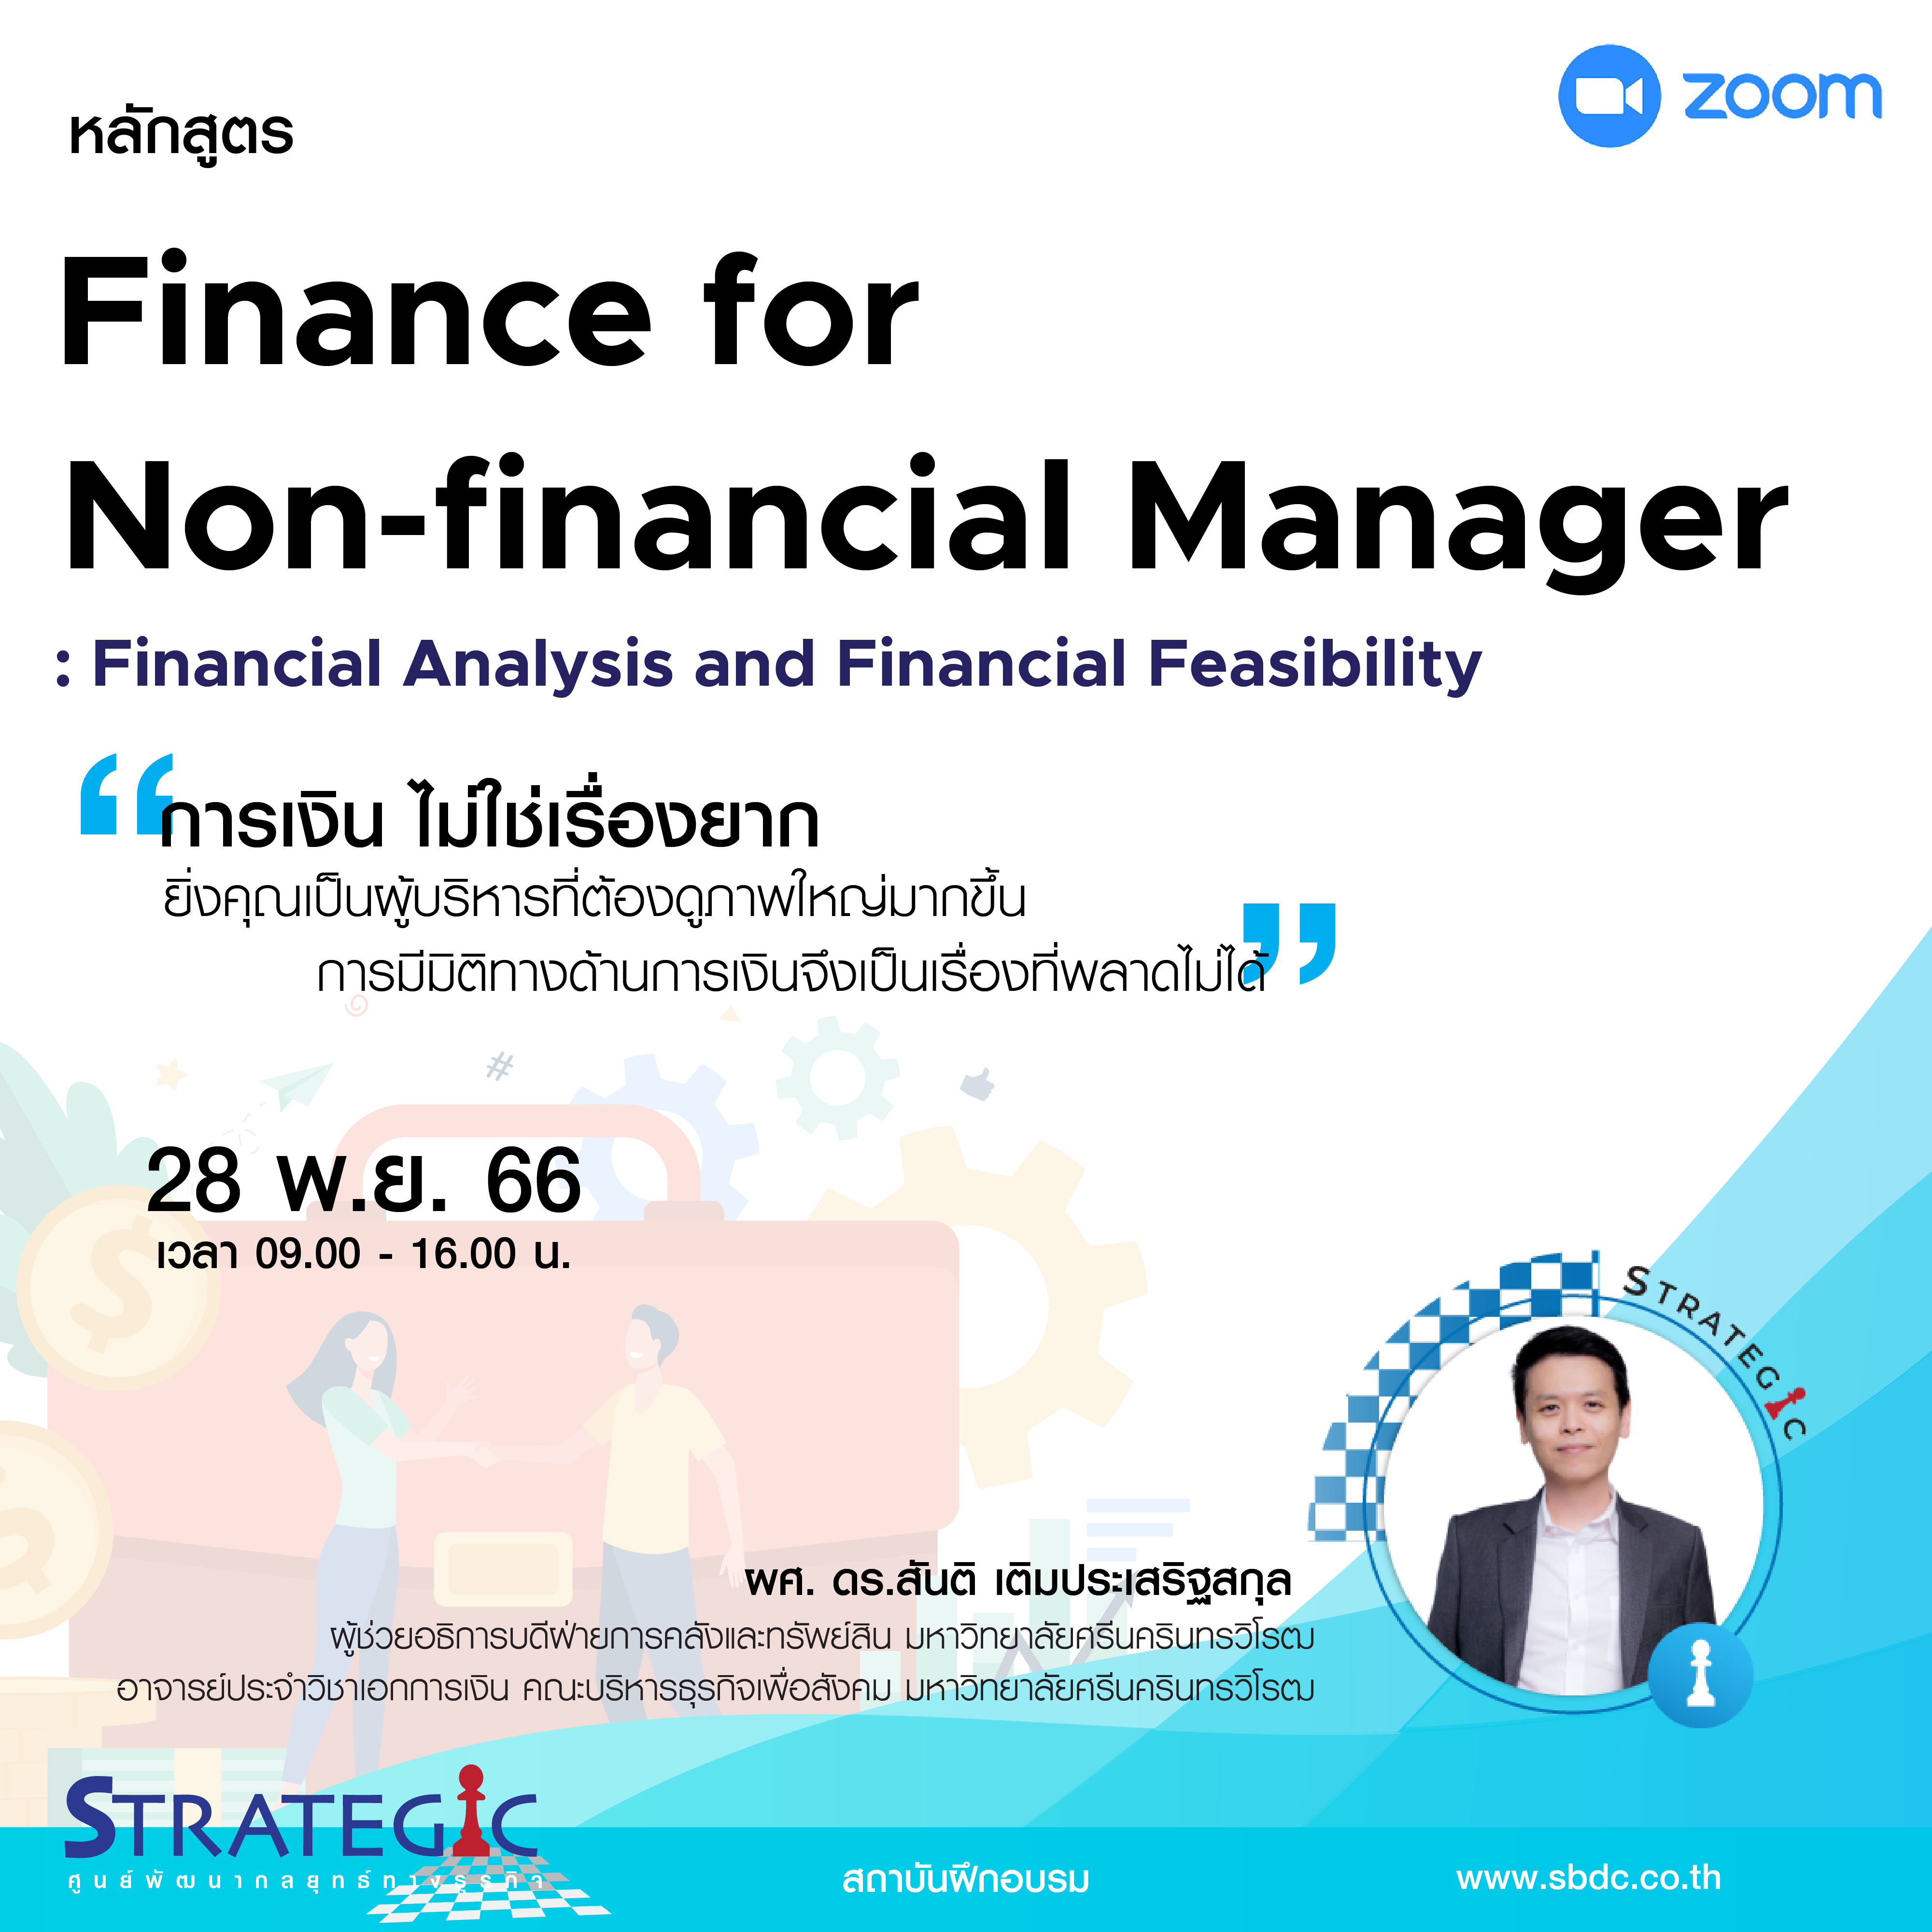 หลักสูตรฝึกอบรมออนไลน์ : Finance for Non-Financial Manager